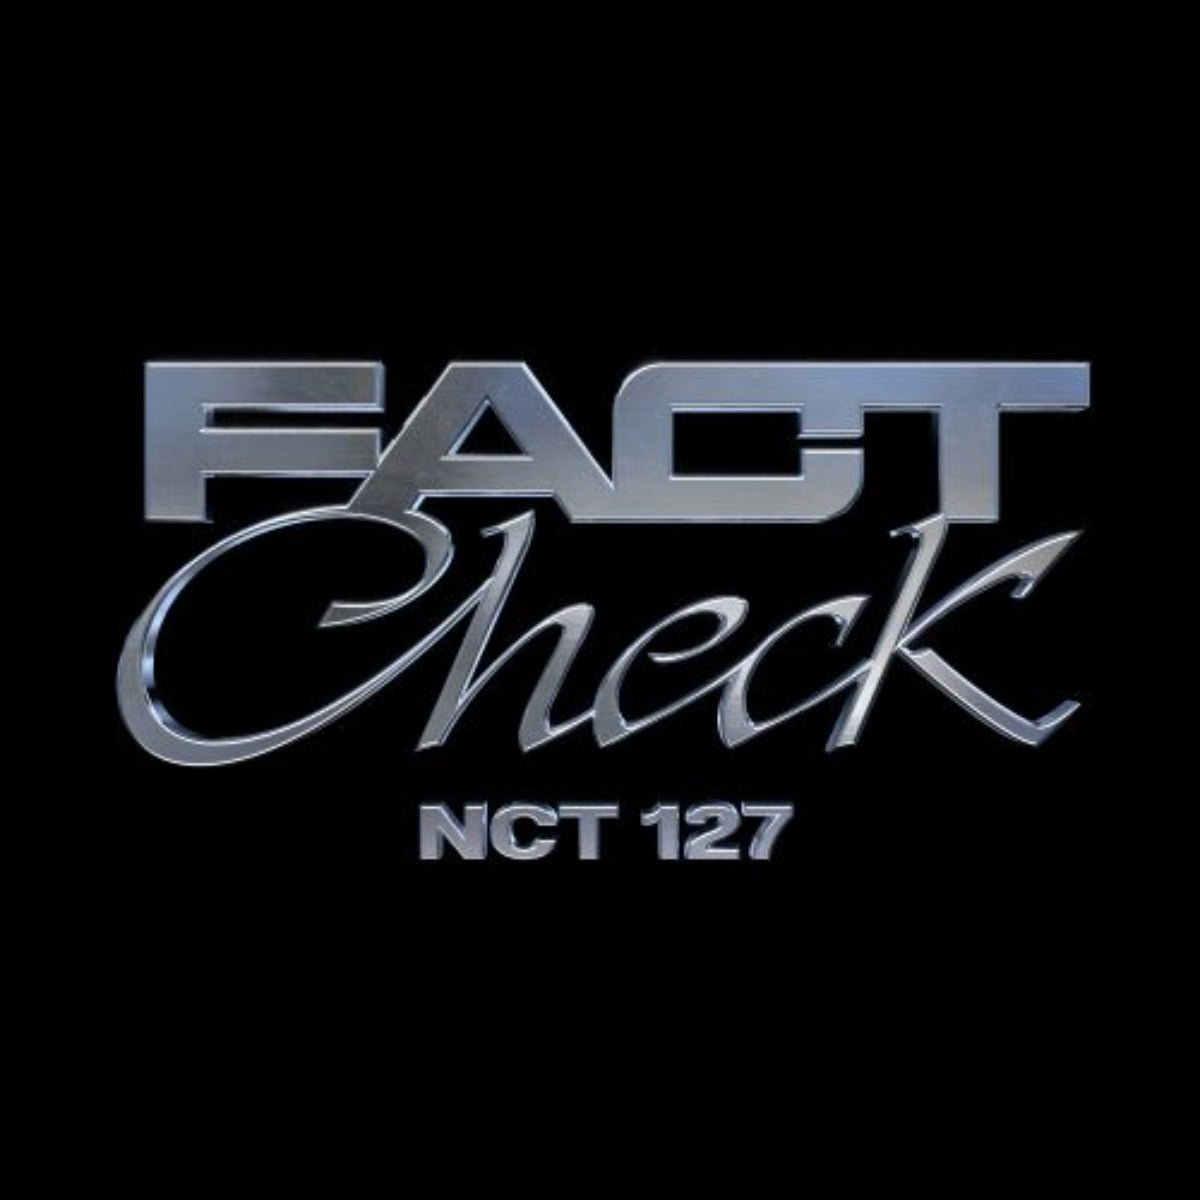 NCT 127 Vol. 5 - Fact Check (QR Version)